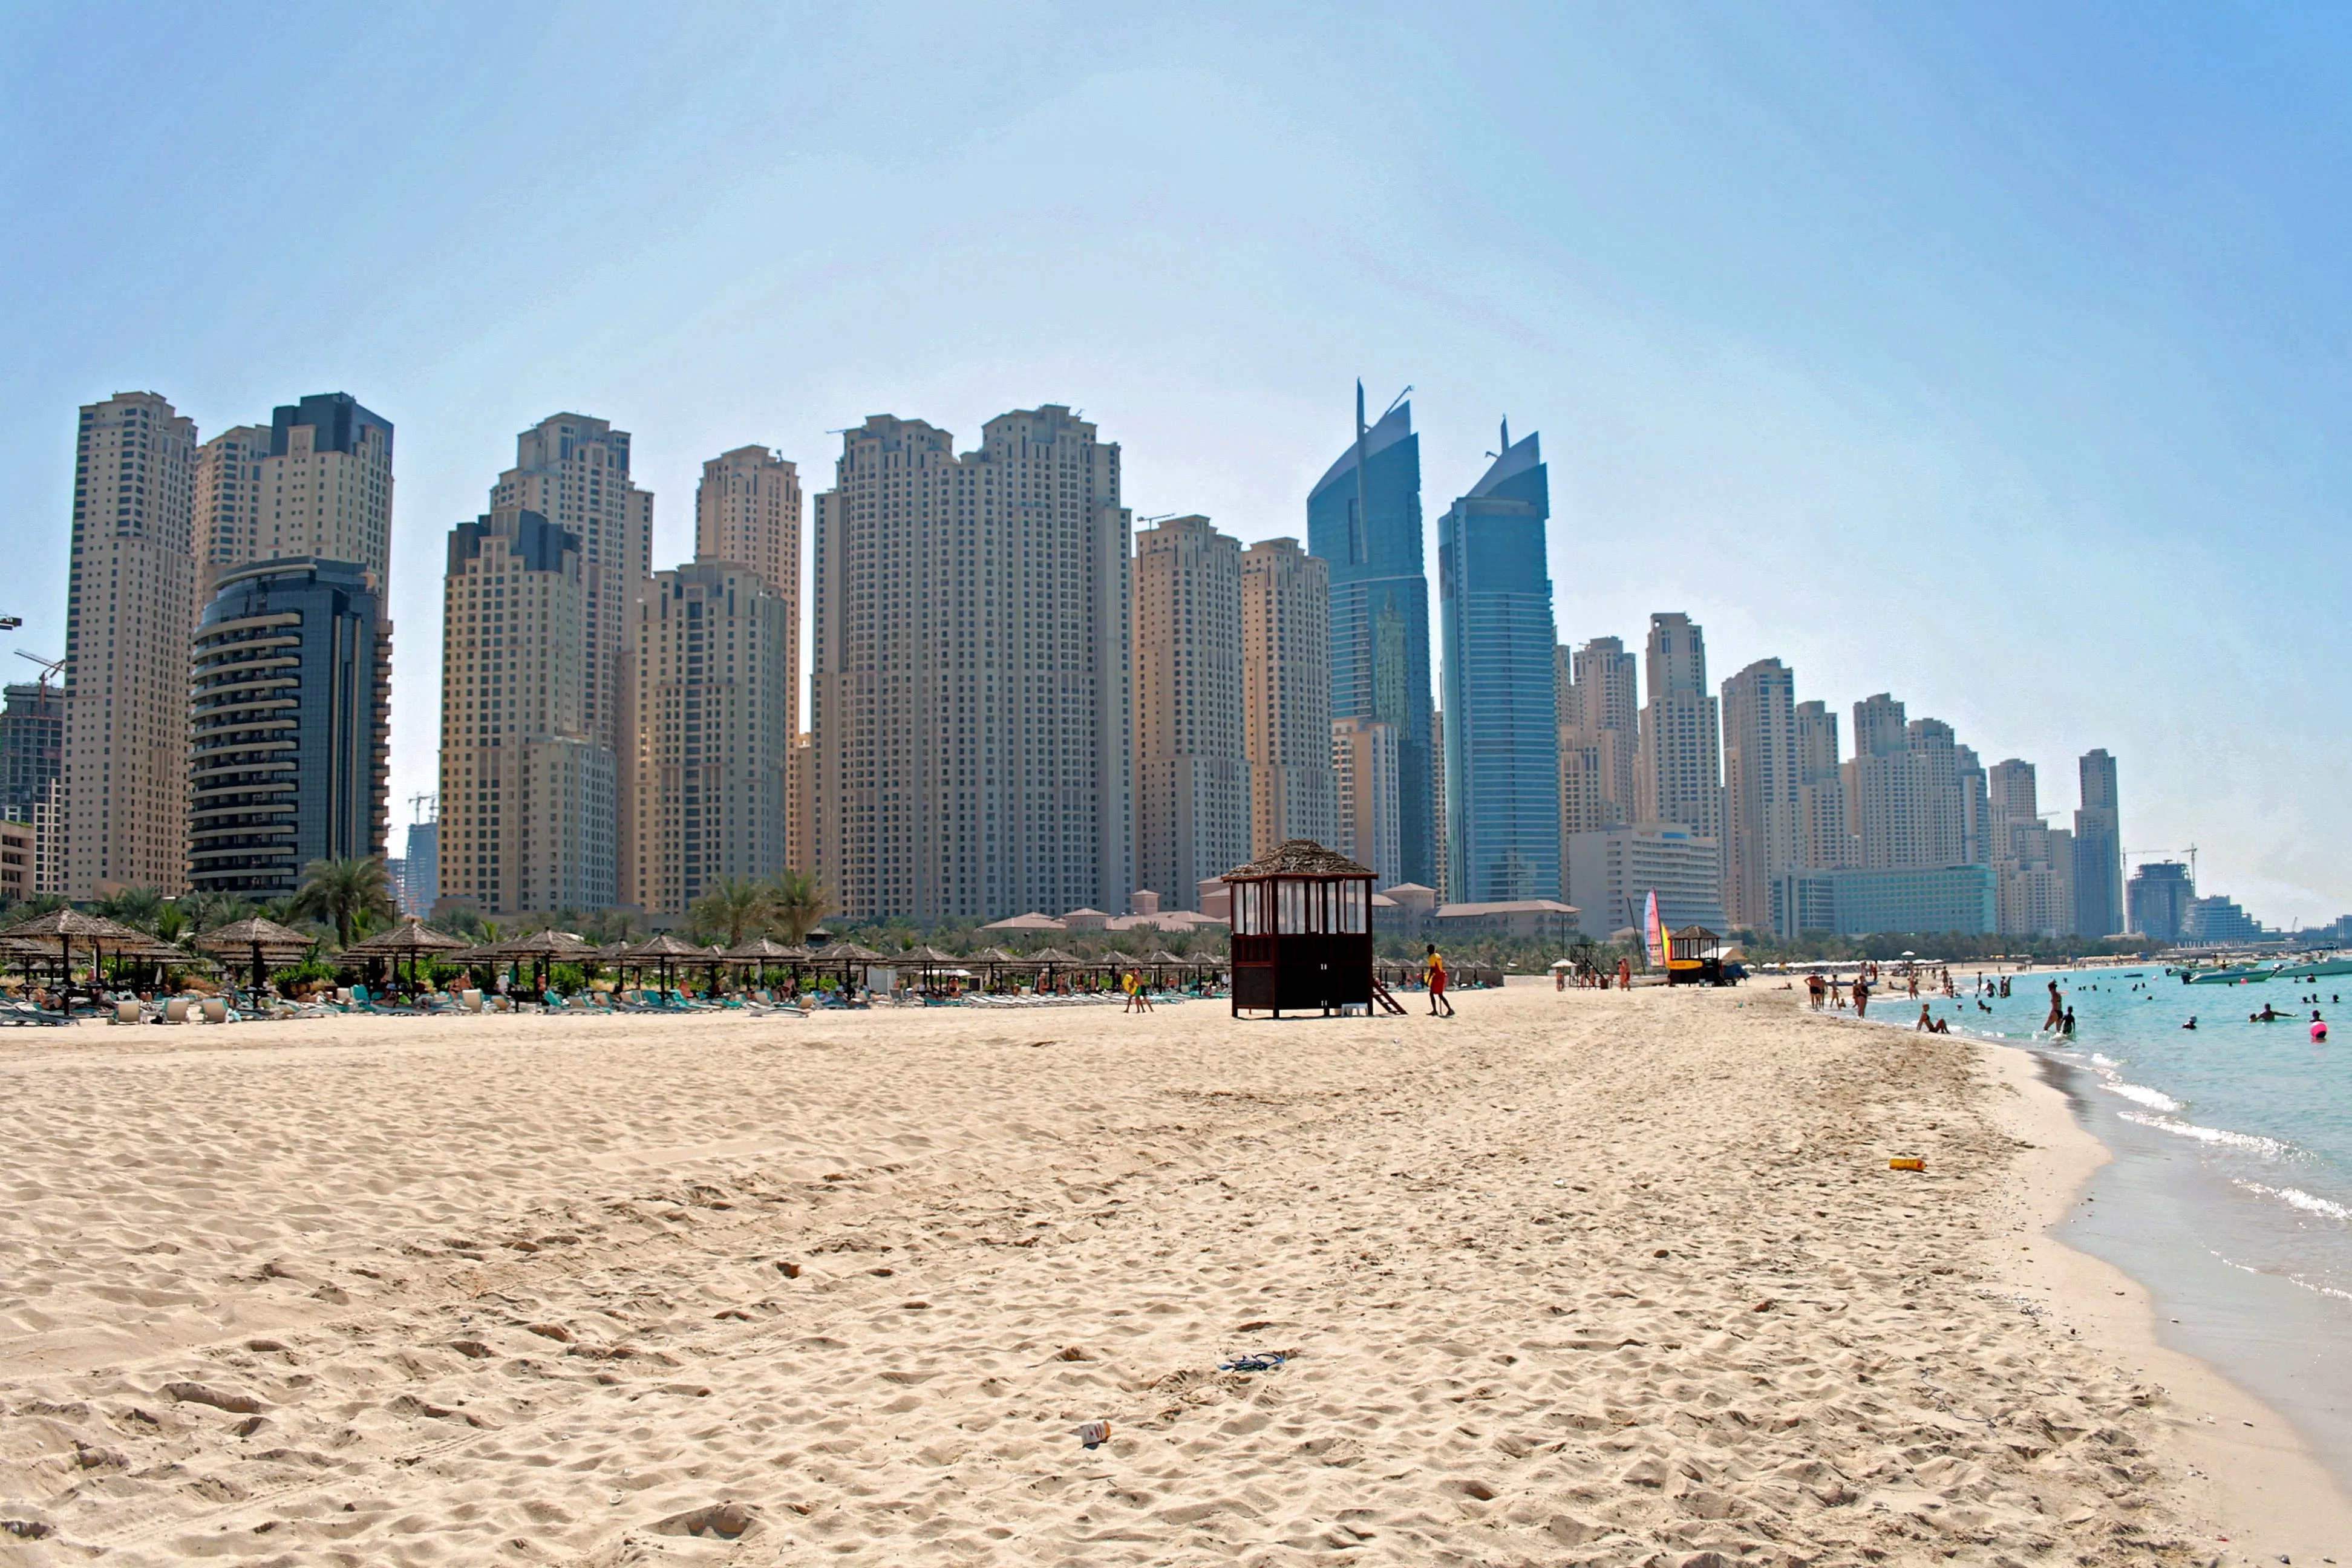 10 أماكن سياحية في دبي في الصيف... تستحقّ الزيارة في هذا الفصل الحار